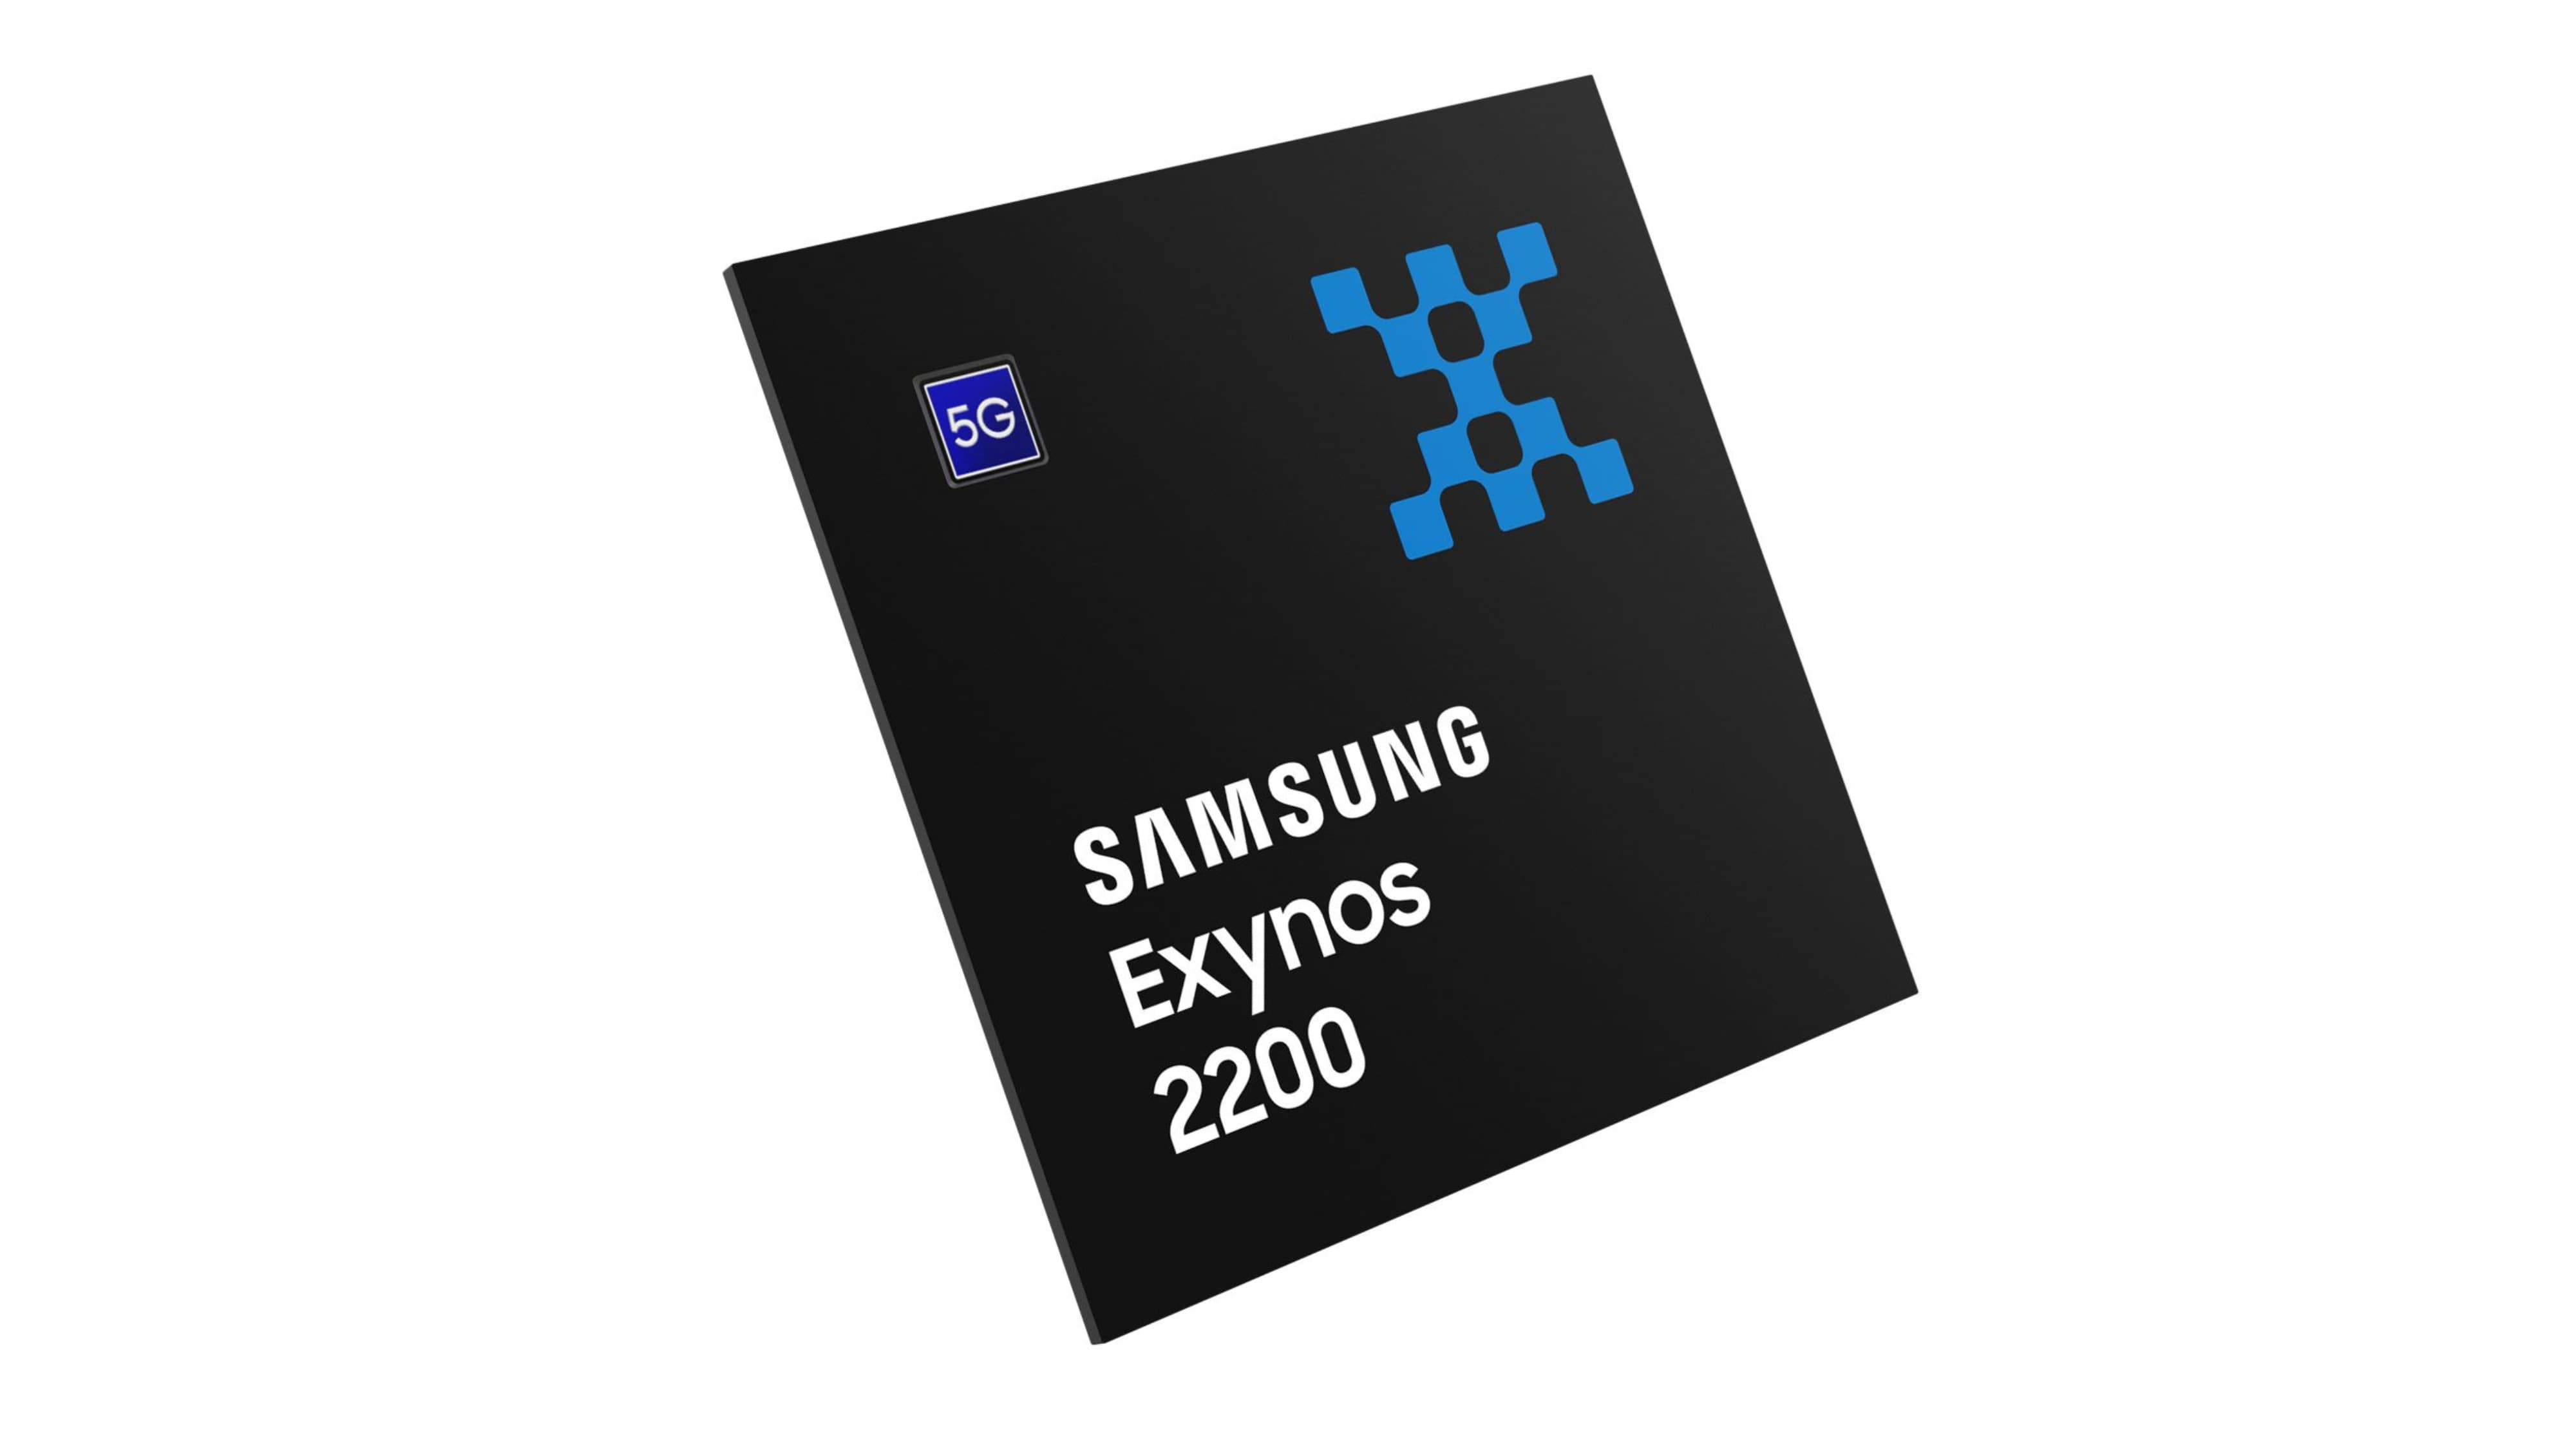 Exynos SoC thế hệ tiếp theo của Samsung có tên mã là Quadra, dựa trên quy trình 3nm